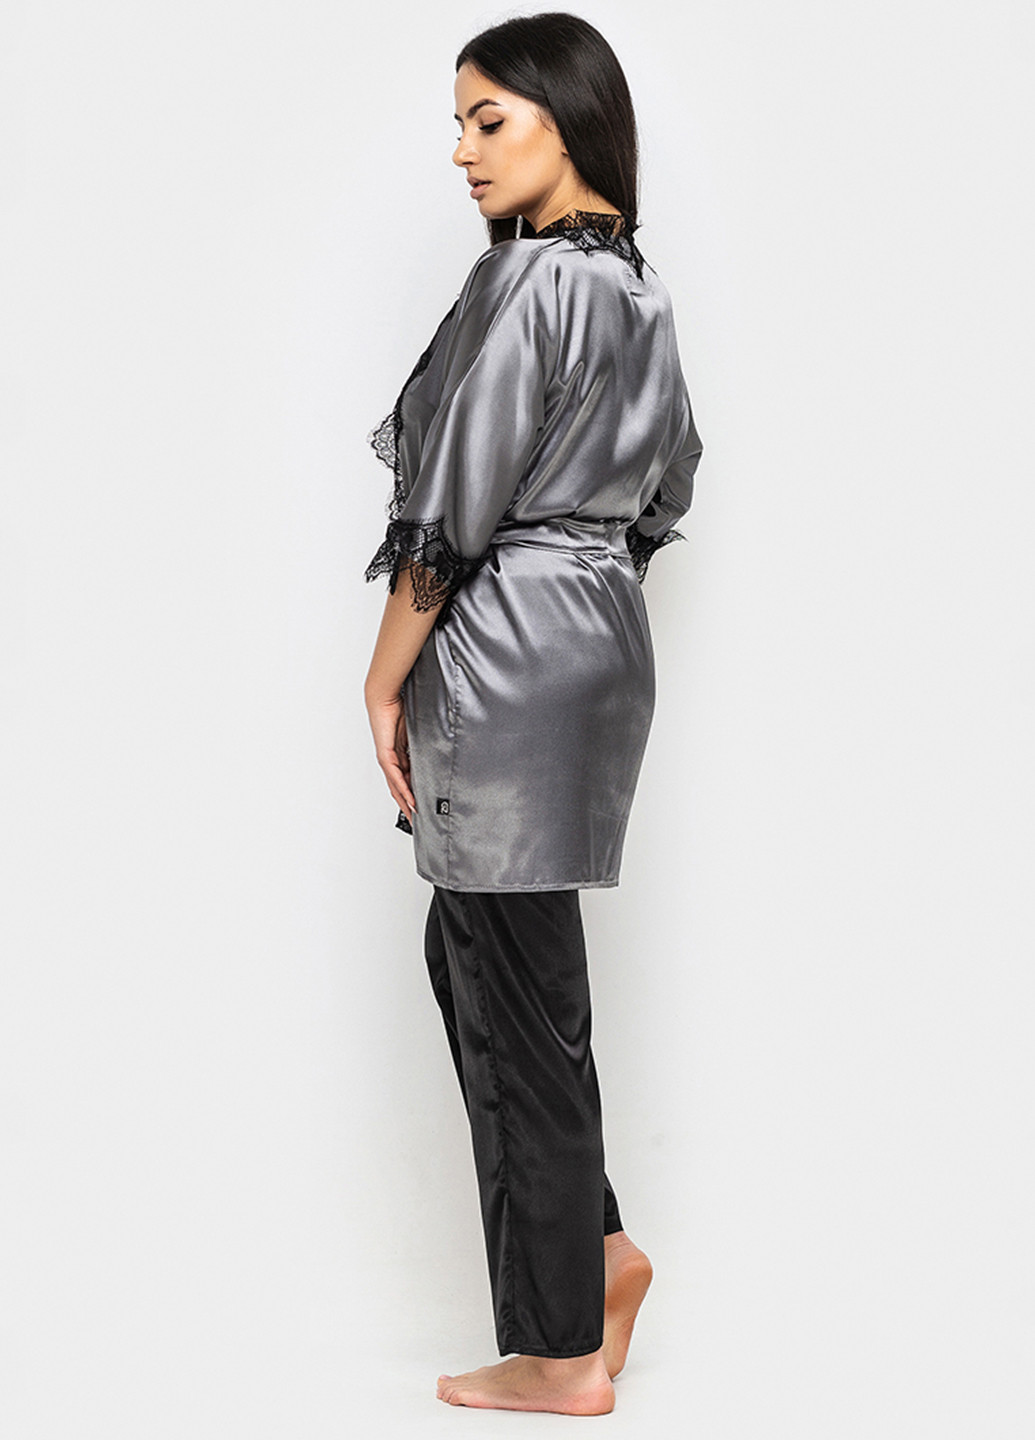 Серый демисезонный комплект (халат, топ, брюки) Ghazel